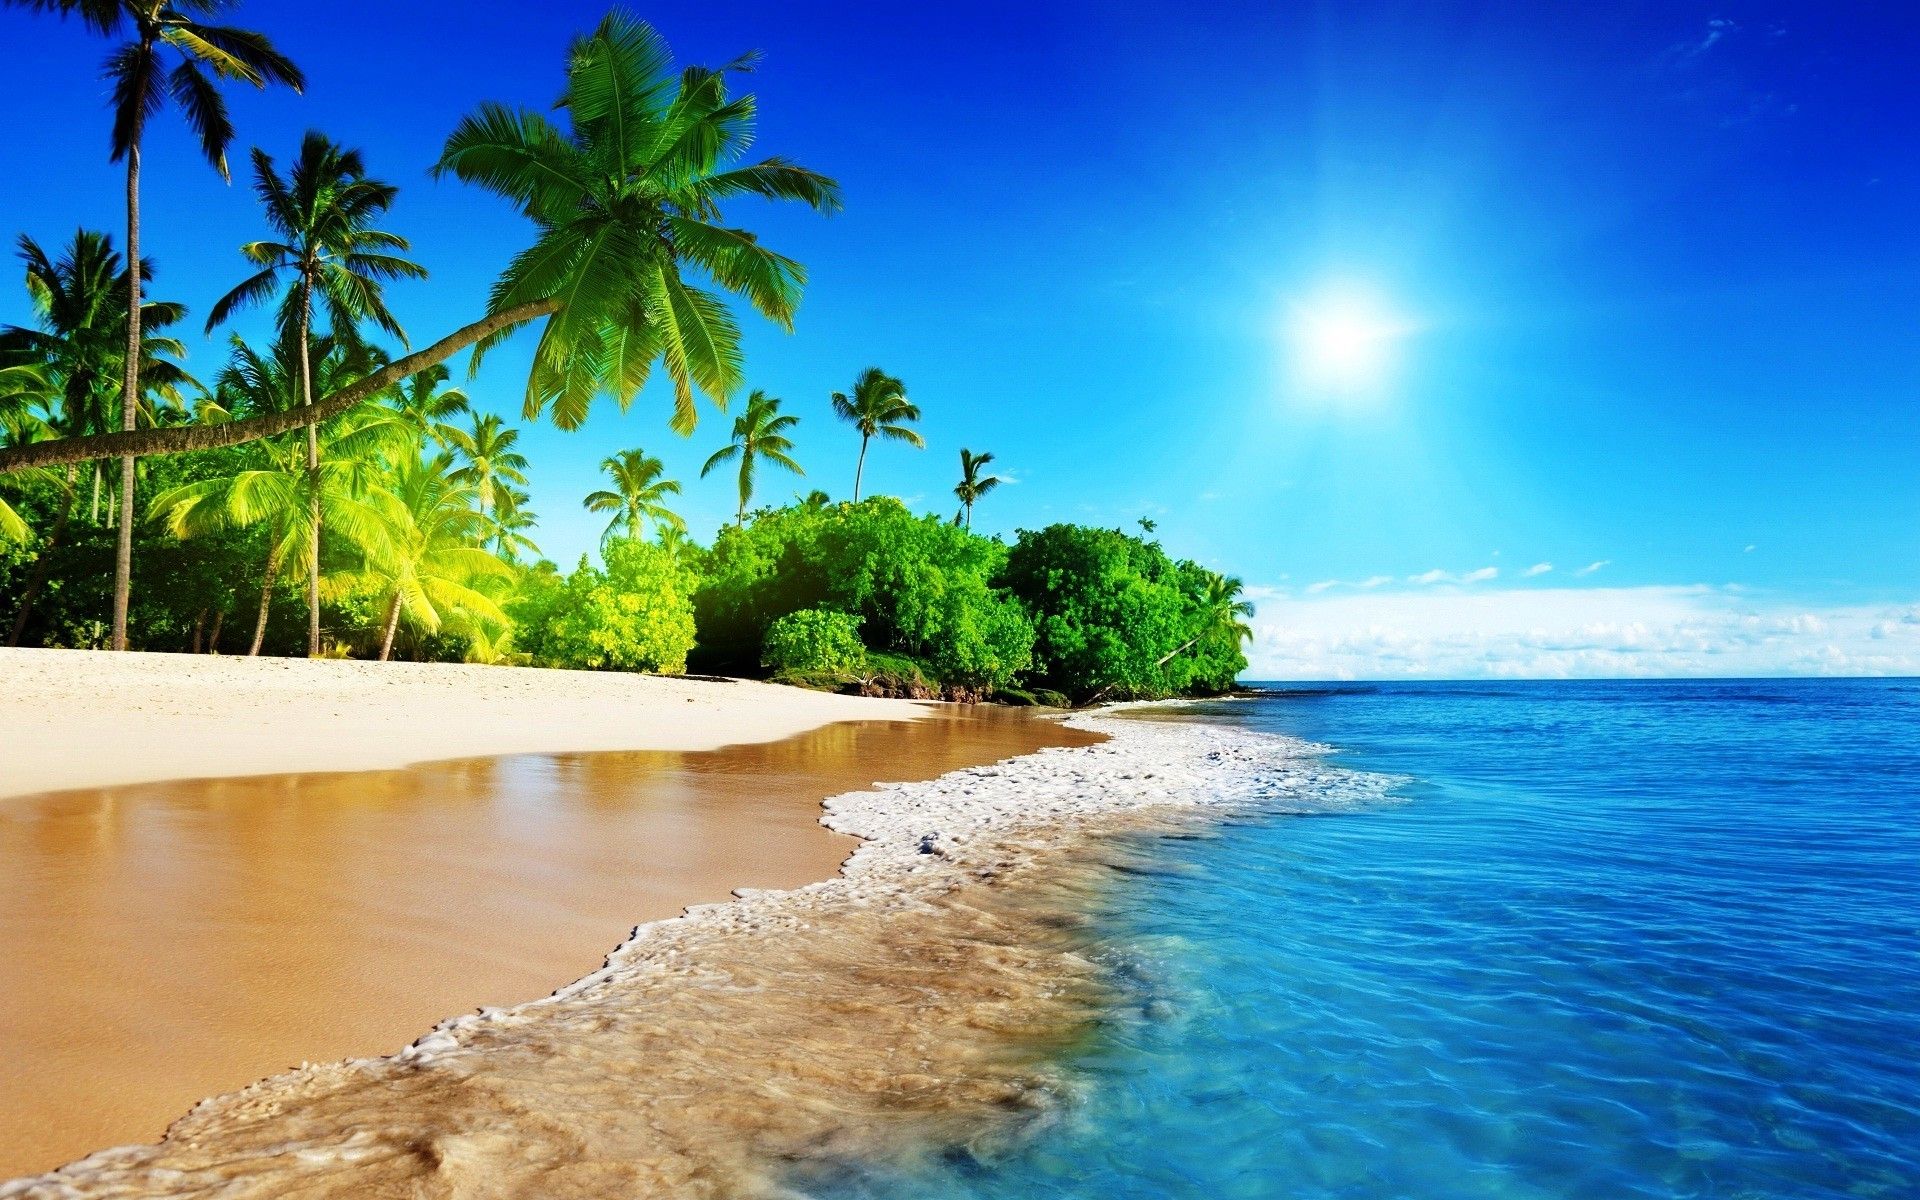 Fondos de pantalla de playas hermosas - FondosMil